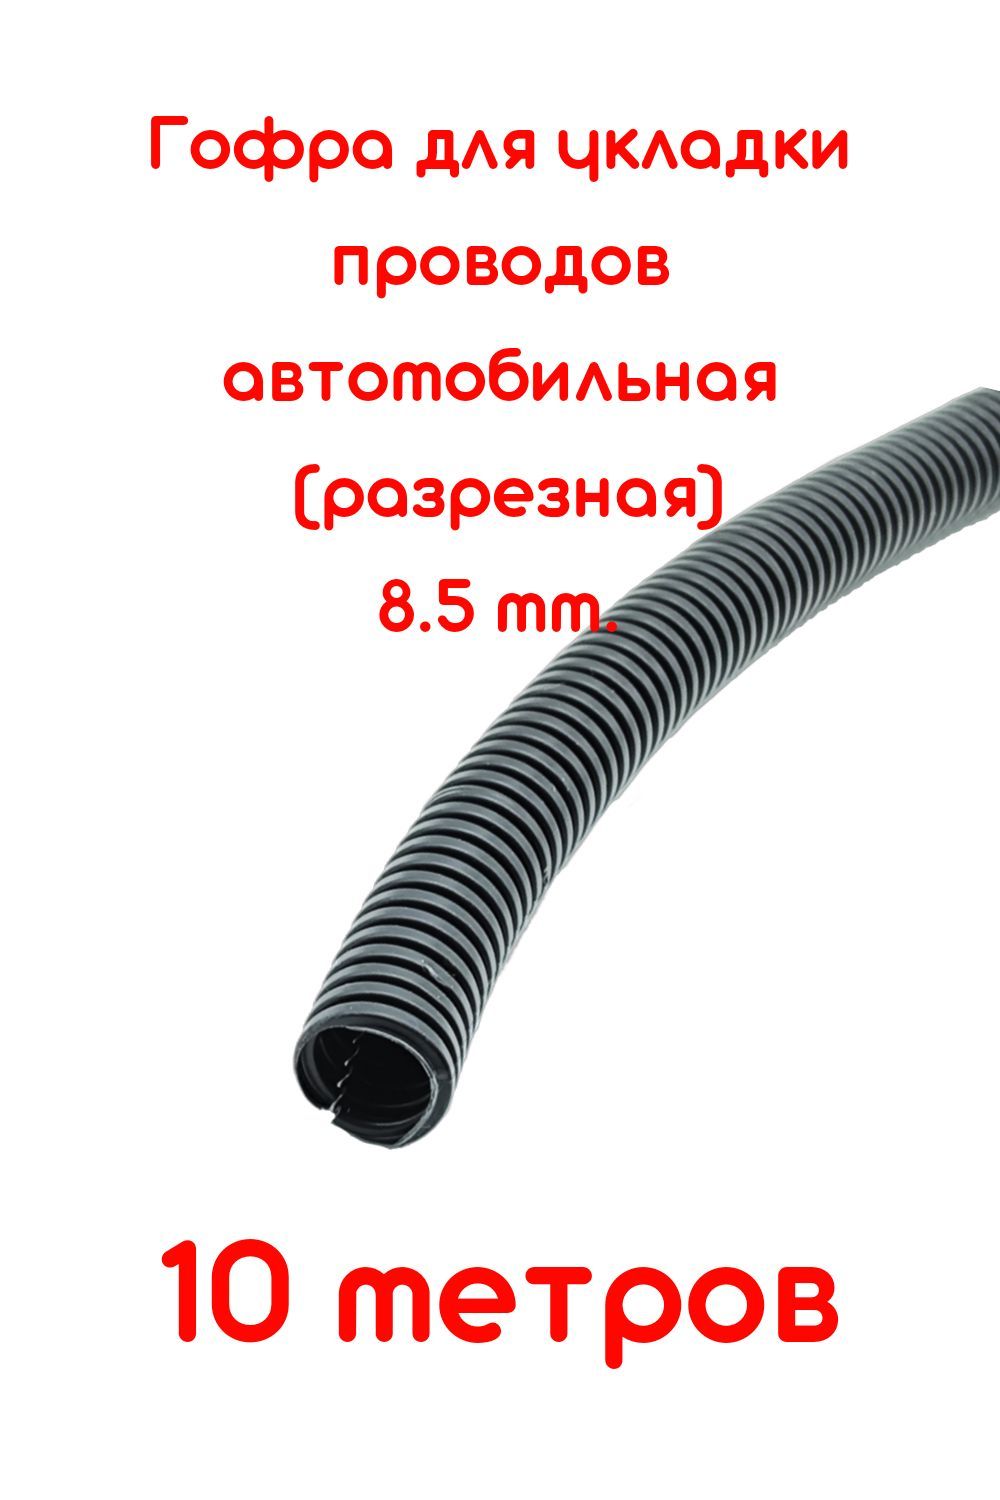 ГофрадляукладкипроводовD8.5mmразрезная(автомобильная/универсальная)10метров